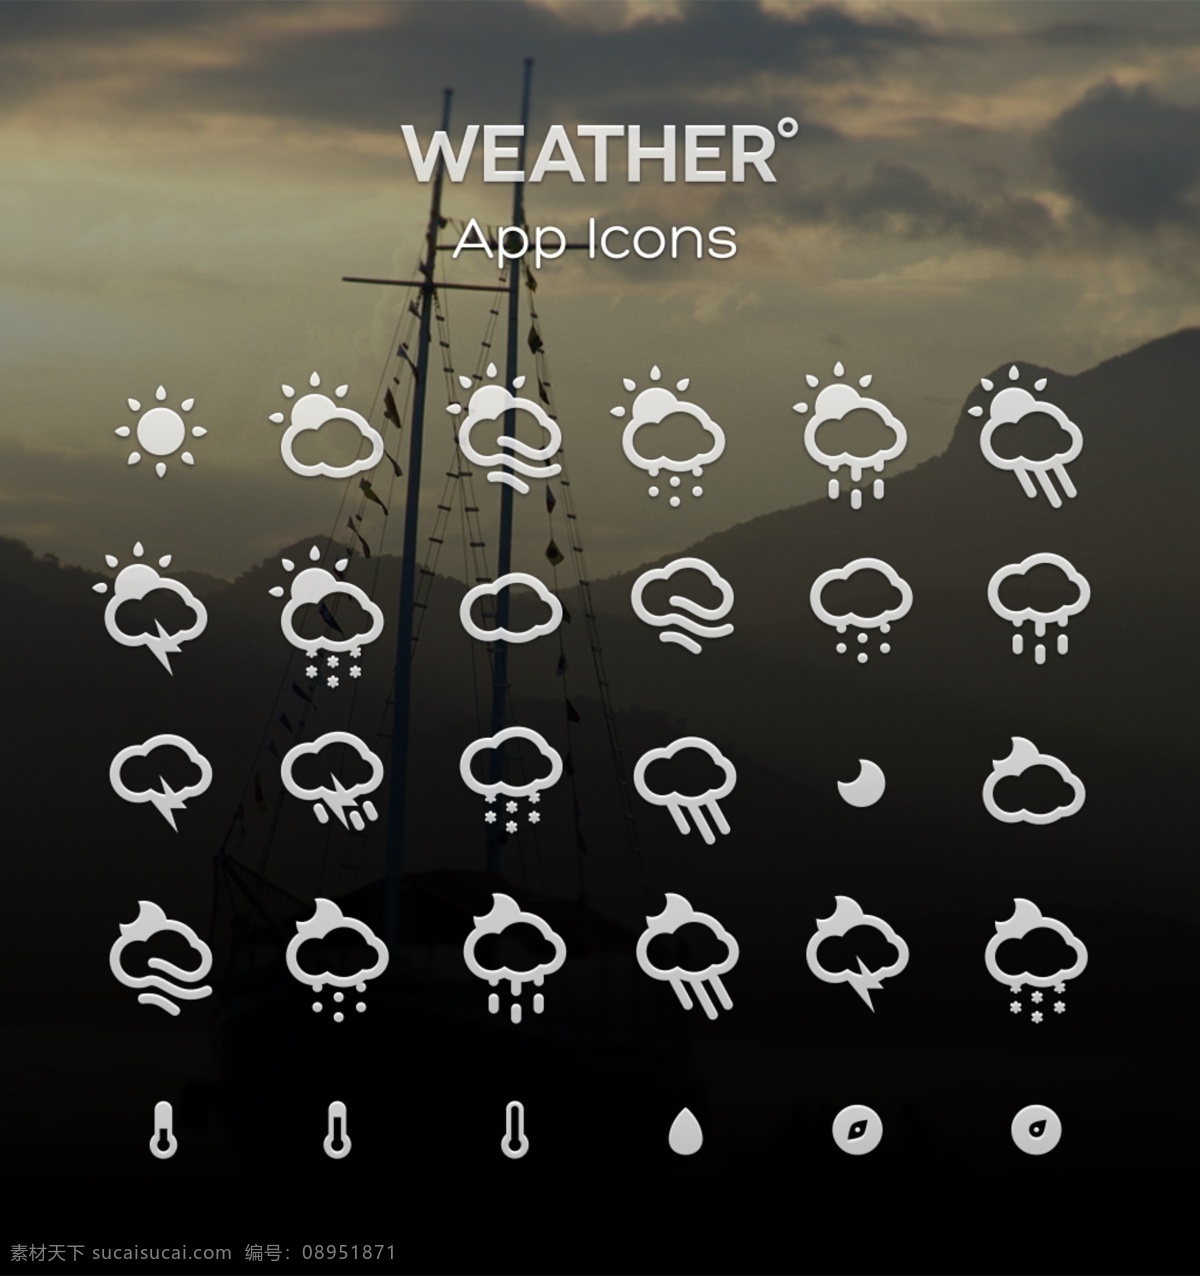 网页 app 线条 矢量 天气 控件 图标素材 天气控件 天气图标 天气控件图标 图标设计 天气icon icon设计 icon icon图标 下雨图标 太阳图标 雨图标 雨 温度计图标